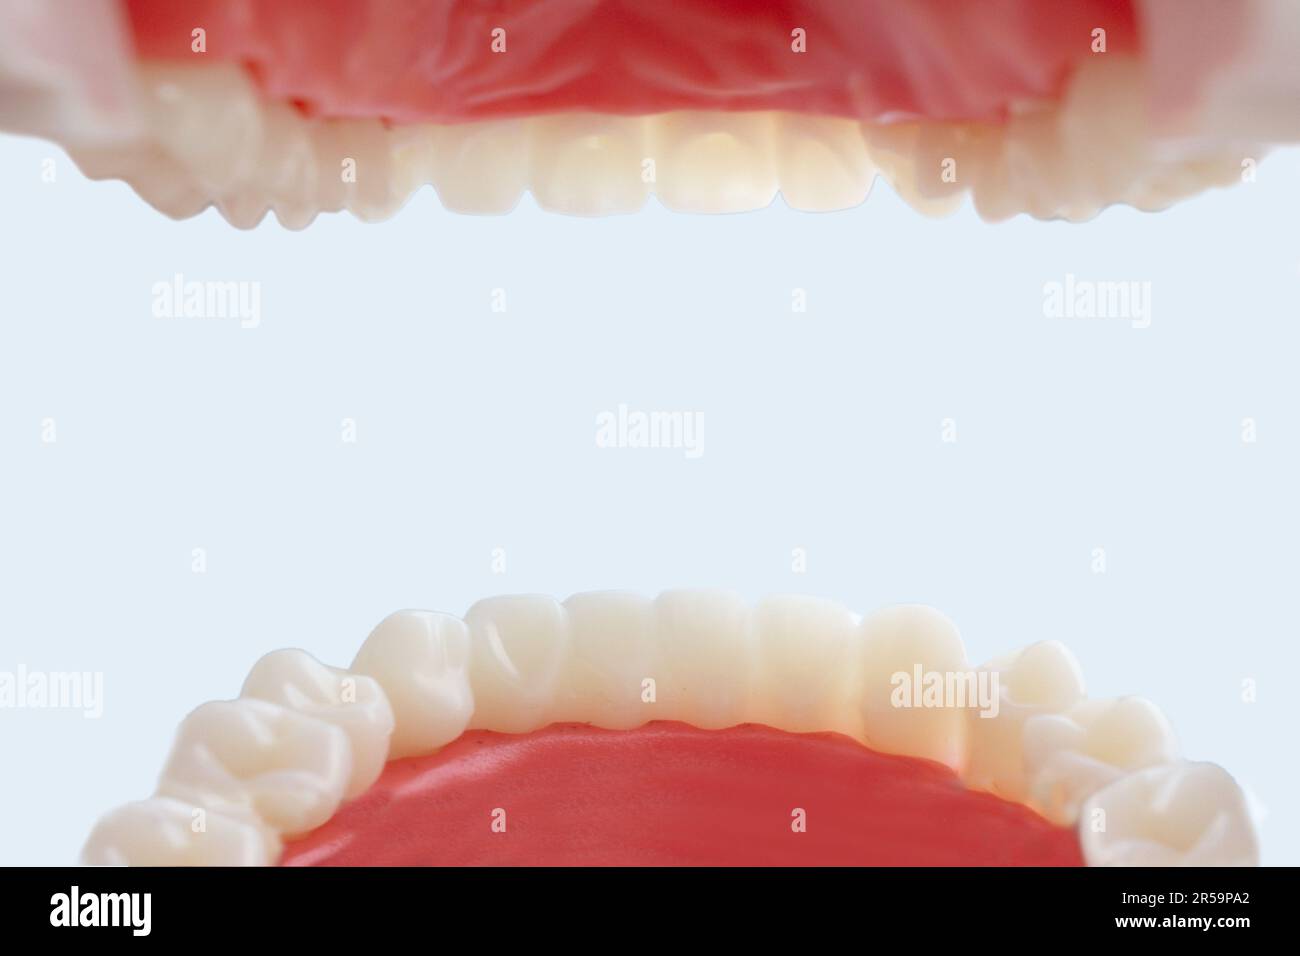 Vue de l'intérieur de la bouche. Prise de vue d'un patient de la bouche du dentiste. Concept d'hygiène buccale dans la famille Banque D'Images